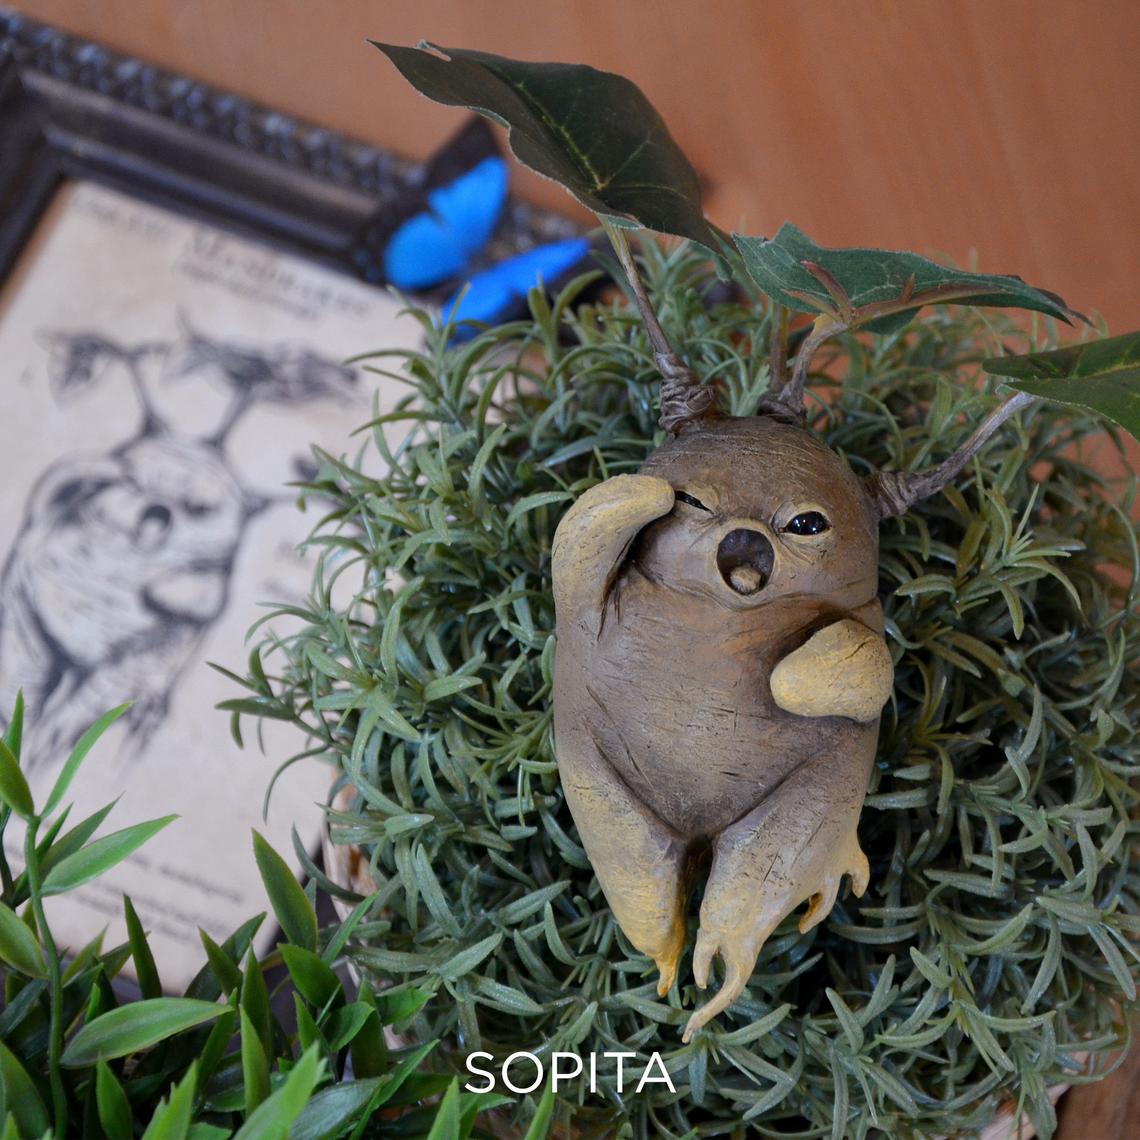 Handmade Mandrake from Harry Potter